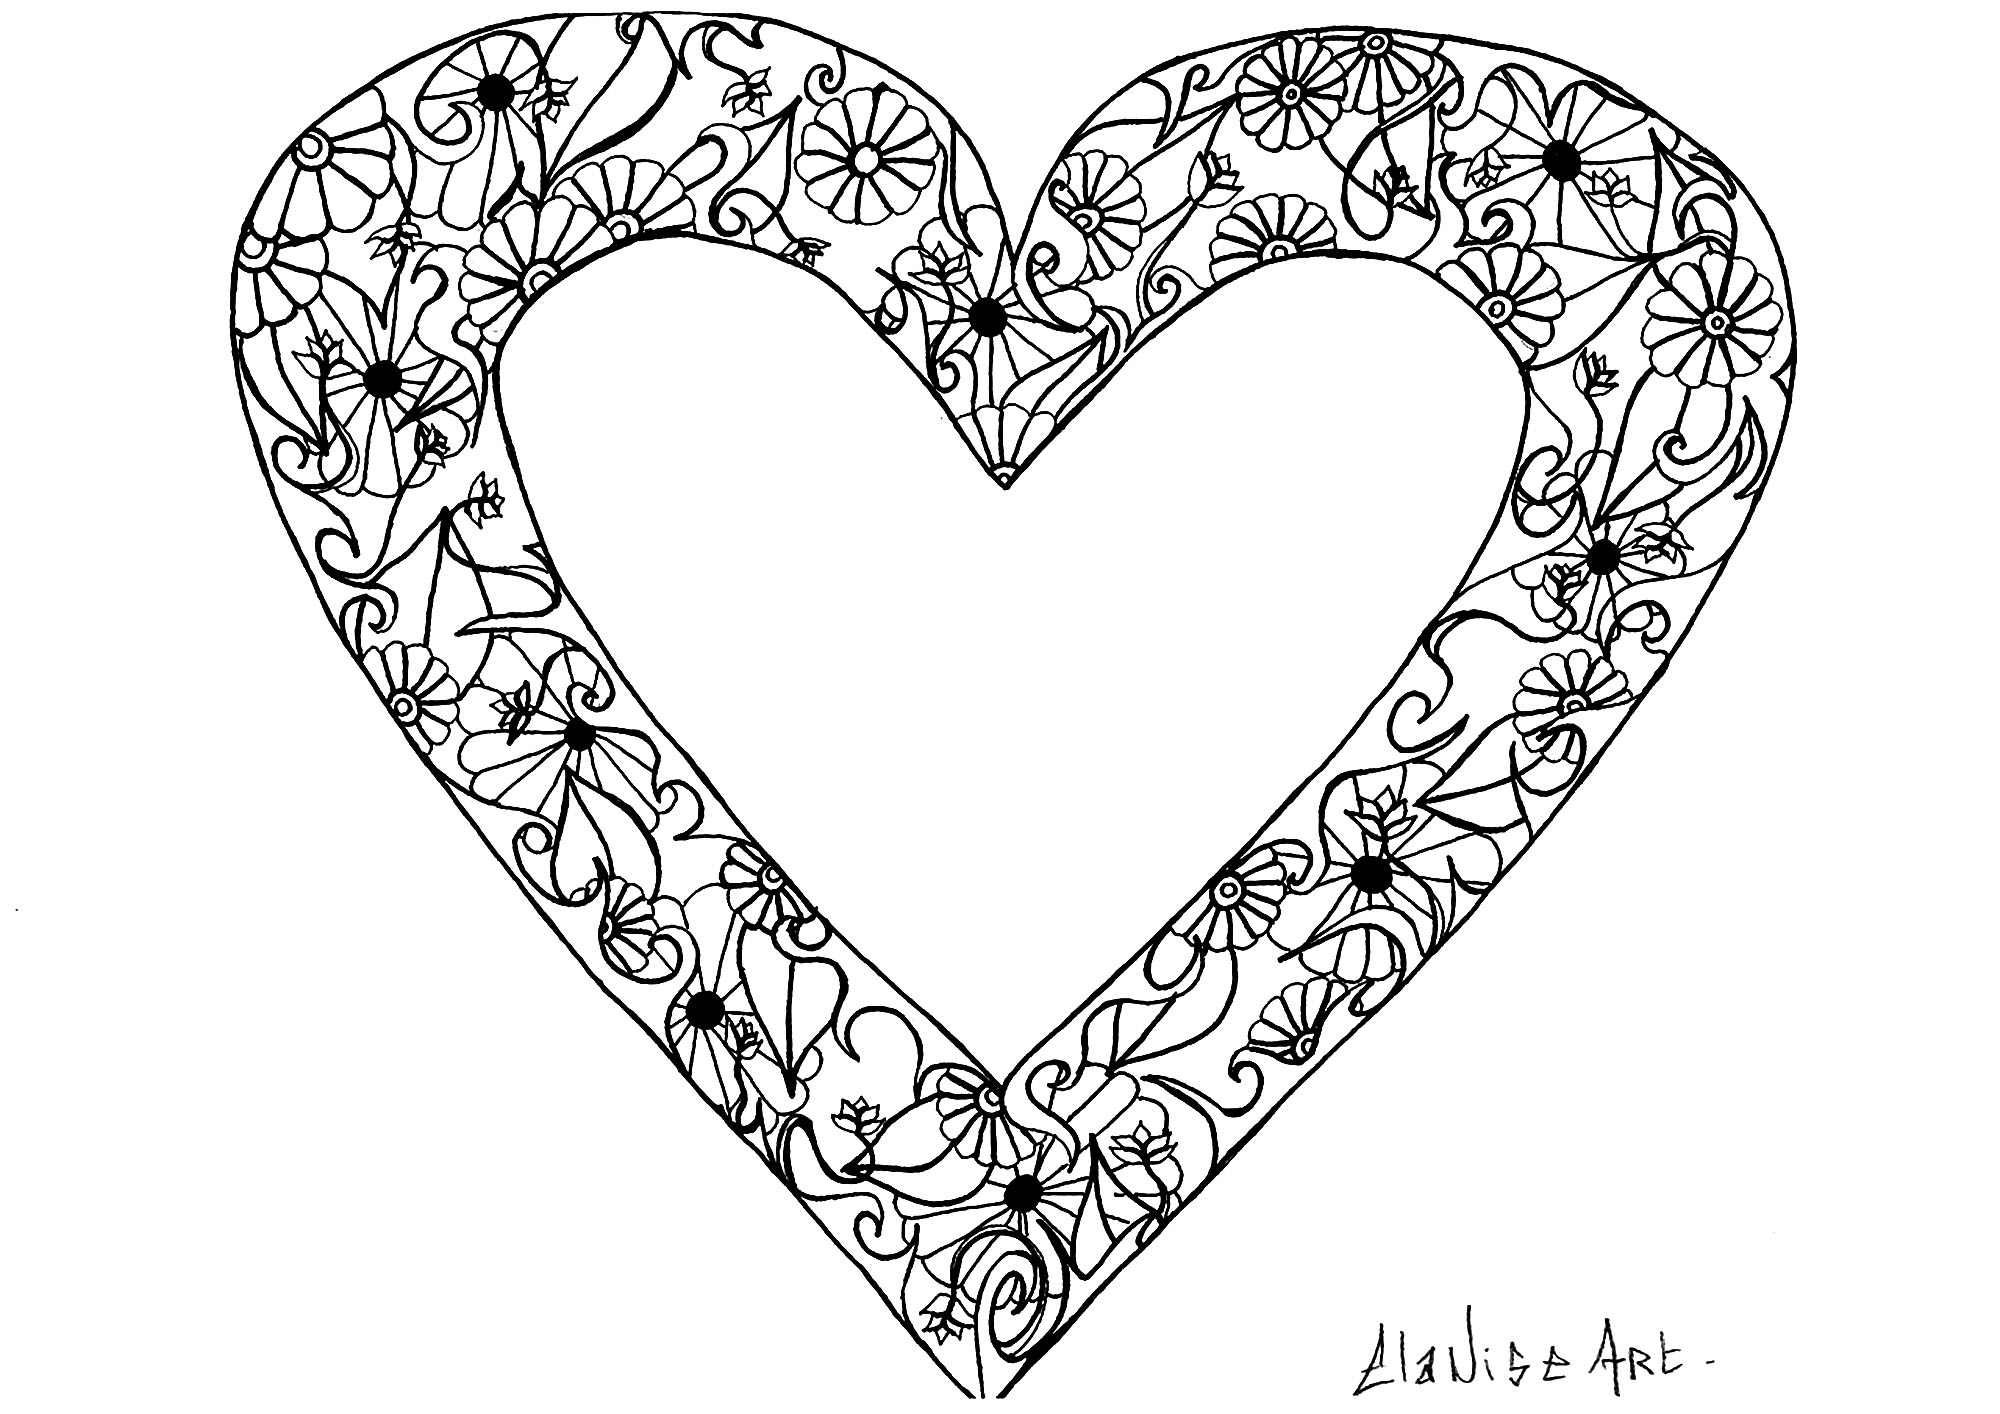 Coole Zeichnung mit einem Herz mit einfachen Blumen und Blättern